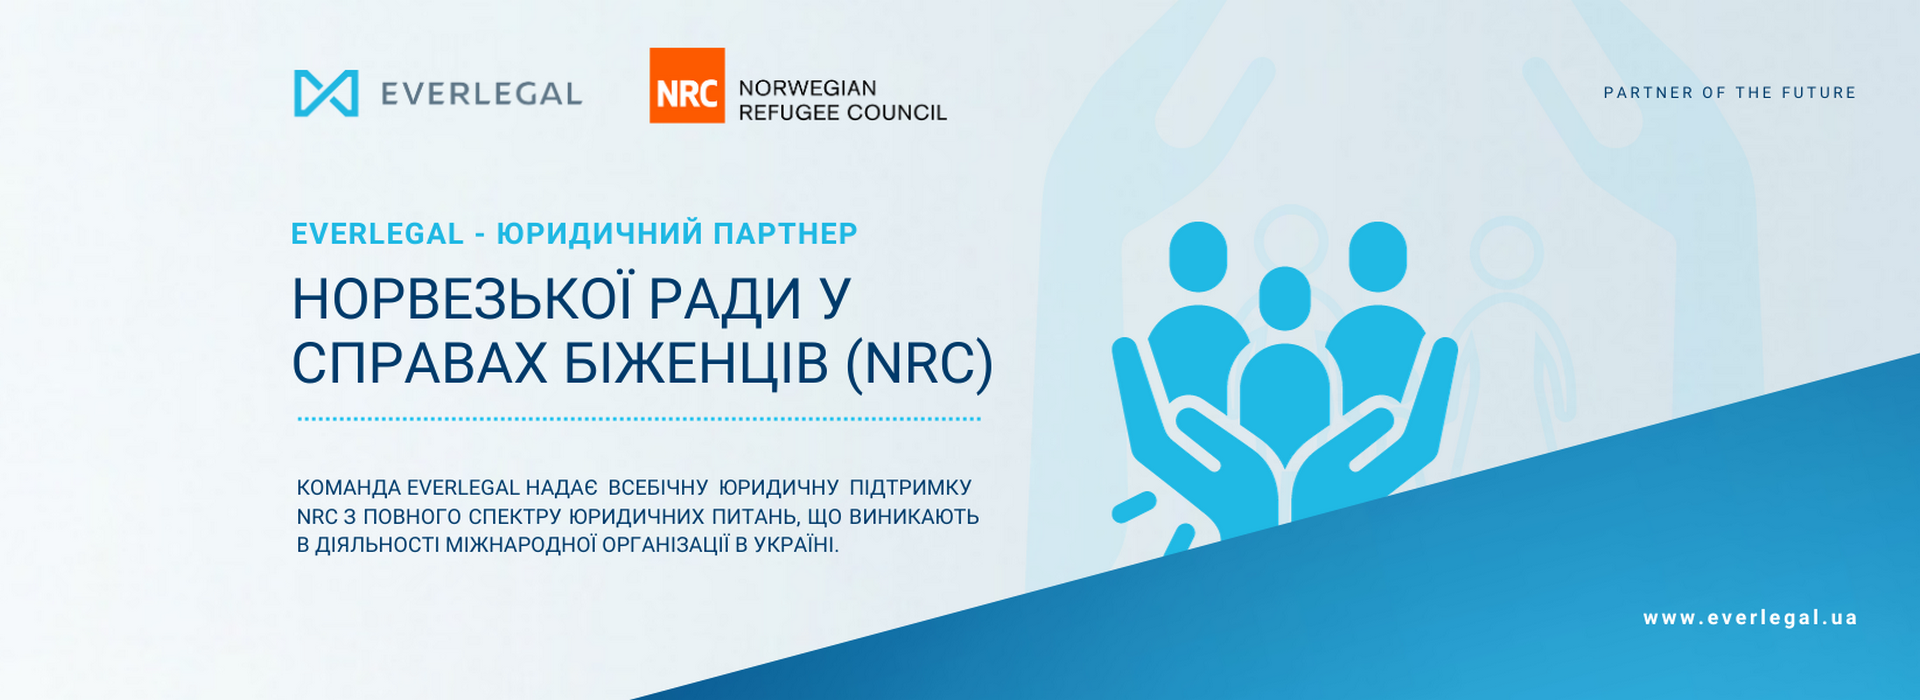 EVERLEGAL – Legal Partner of the Norwegian Refugee Council (NRC) in Ukraine